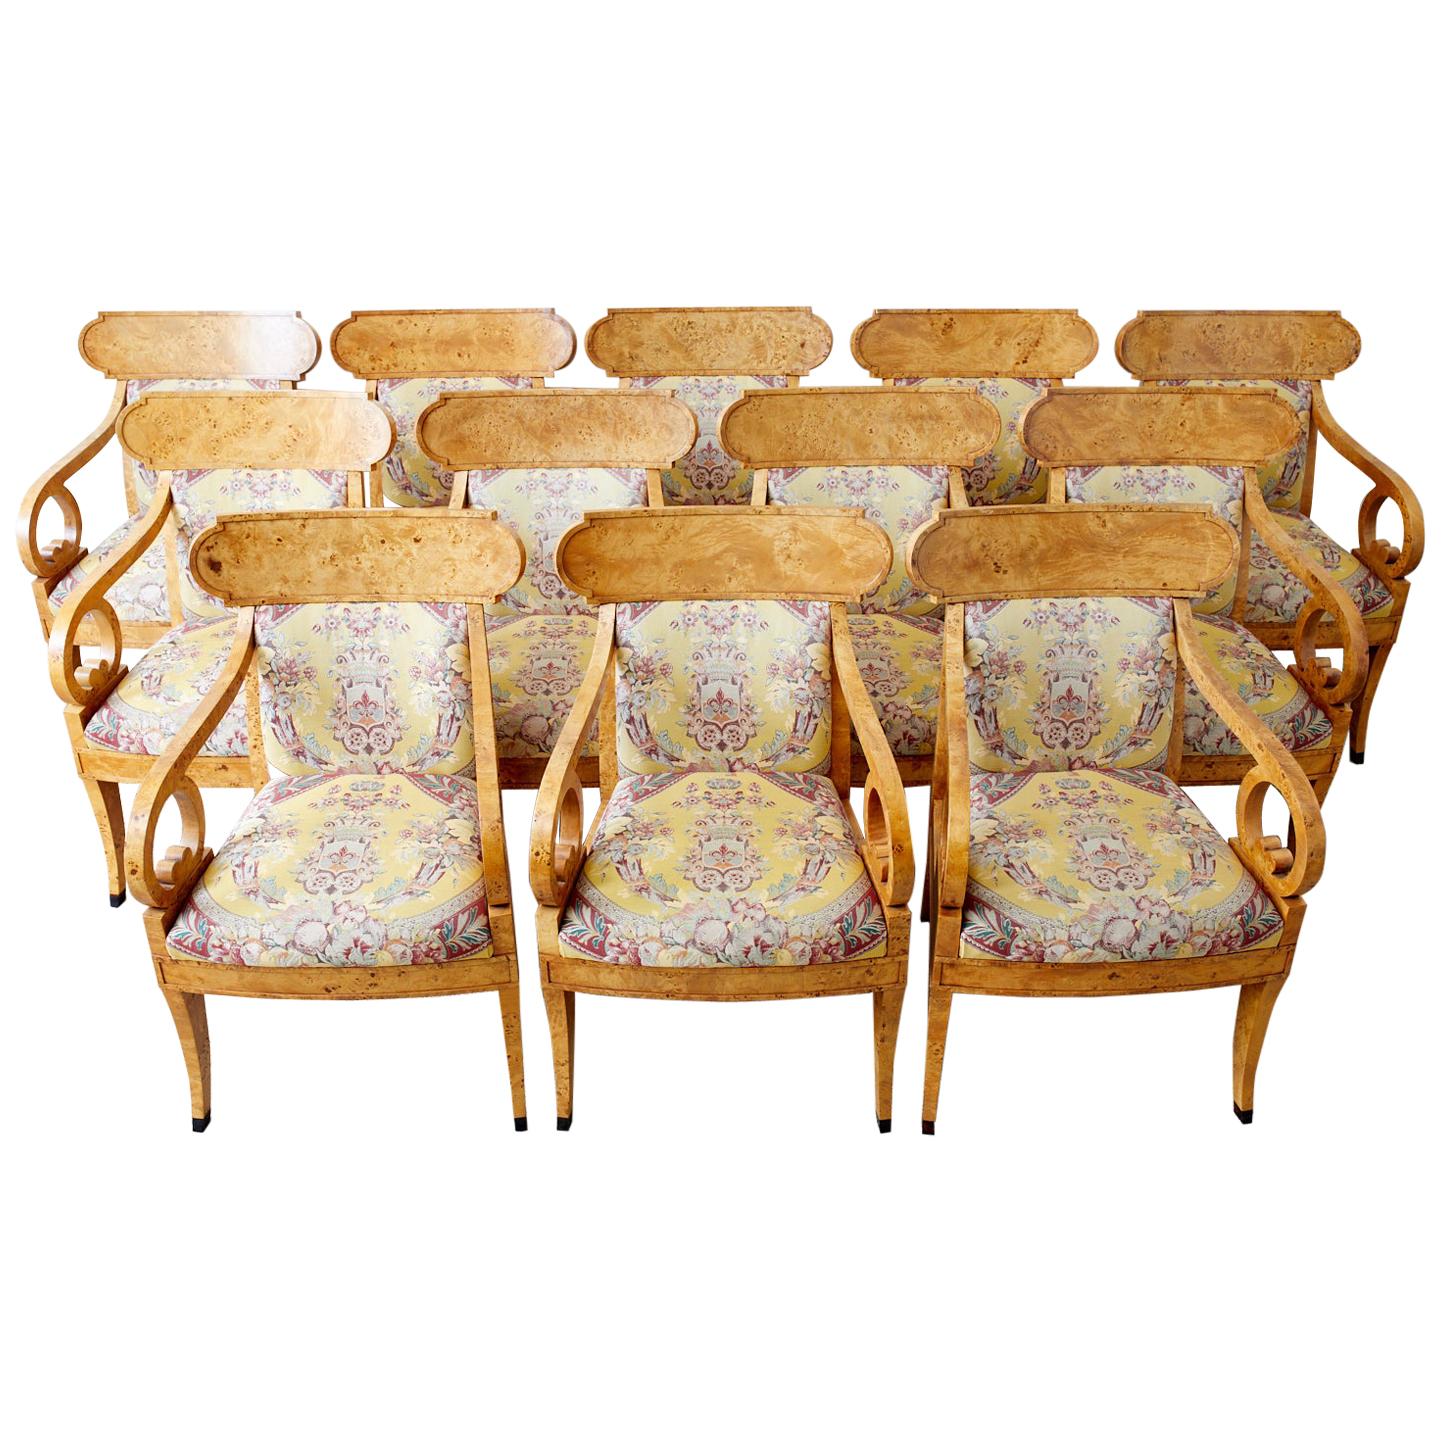 Magnifiques fauteuils ou chaises de salle à manger en klismos de style Regency anglais fabriqués par Baker Furniture. Les cadres sont fabriqués à la main et recouverts de placages en bois de ronce. Le dossier incurvé de forme klismos est relié à des